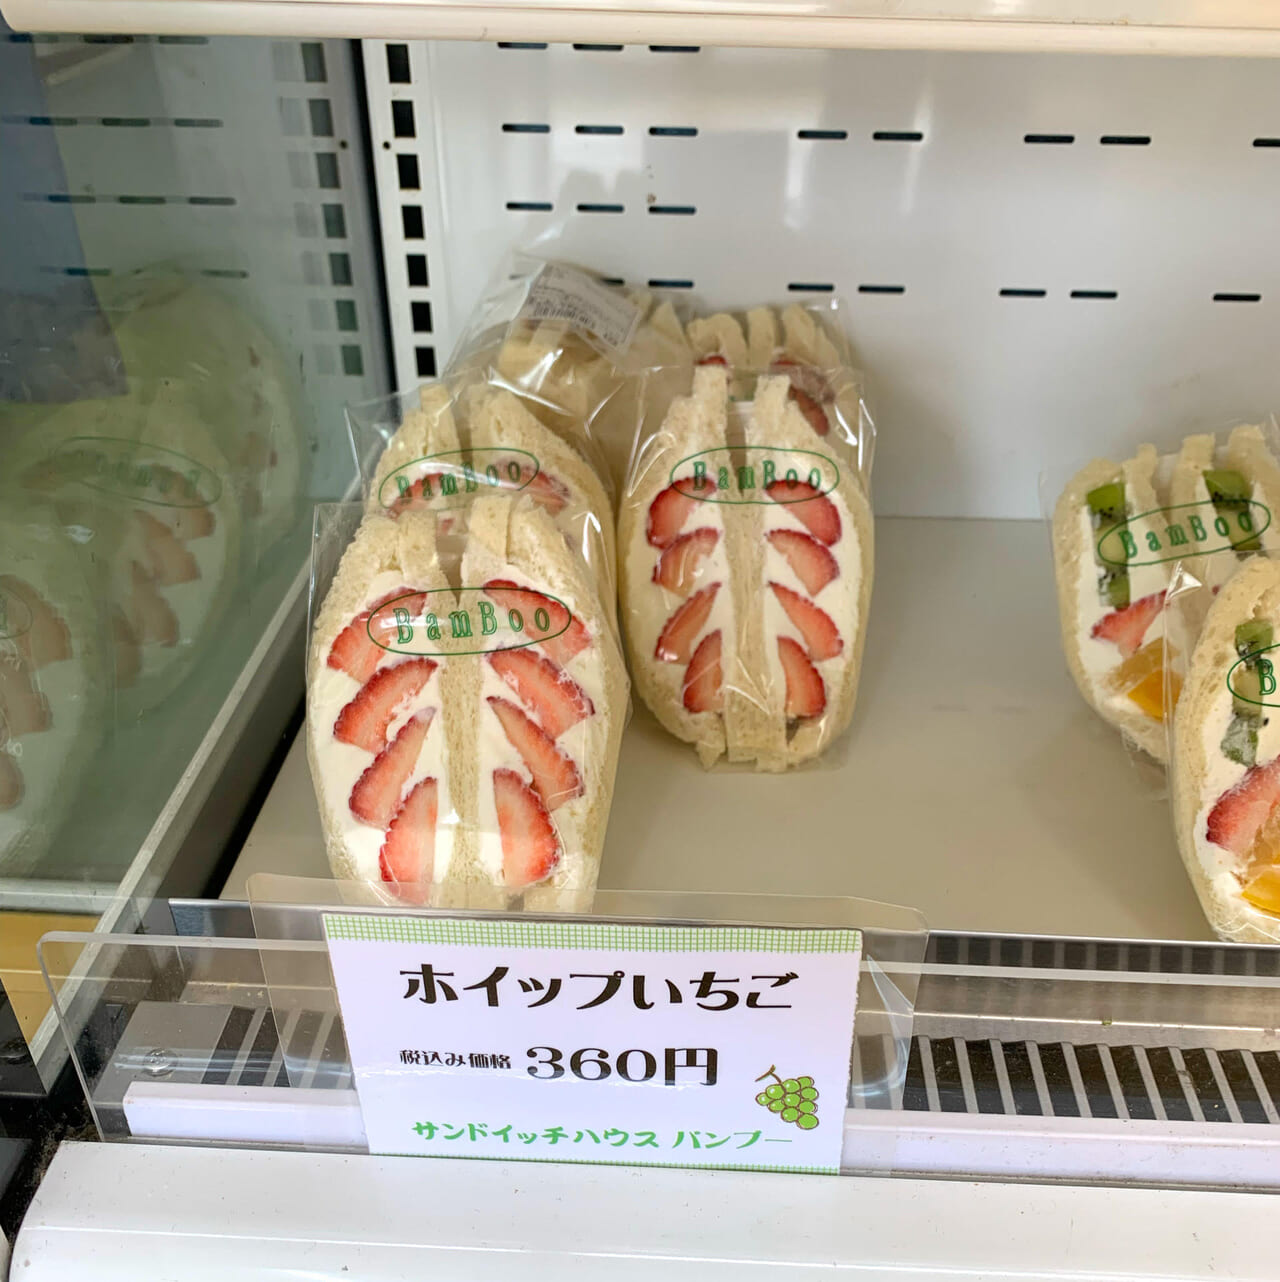 美須賀町にある「サンドウィッチハウス バンブー」は30年近くユーザーから愛されるお店です!!